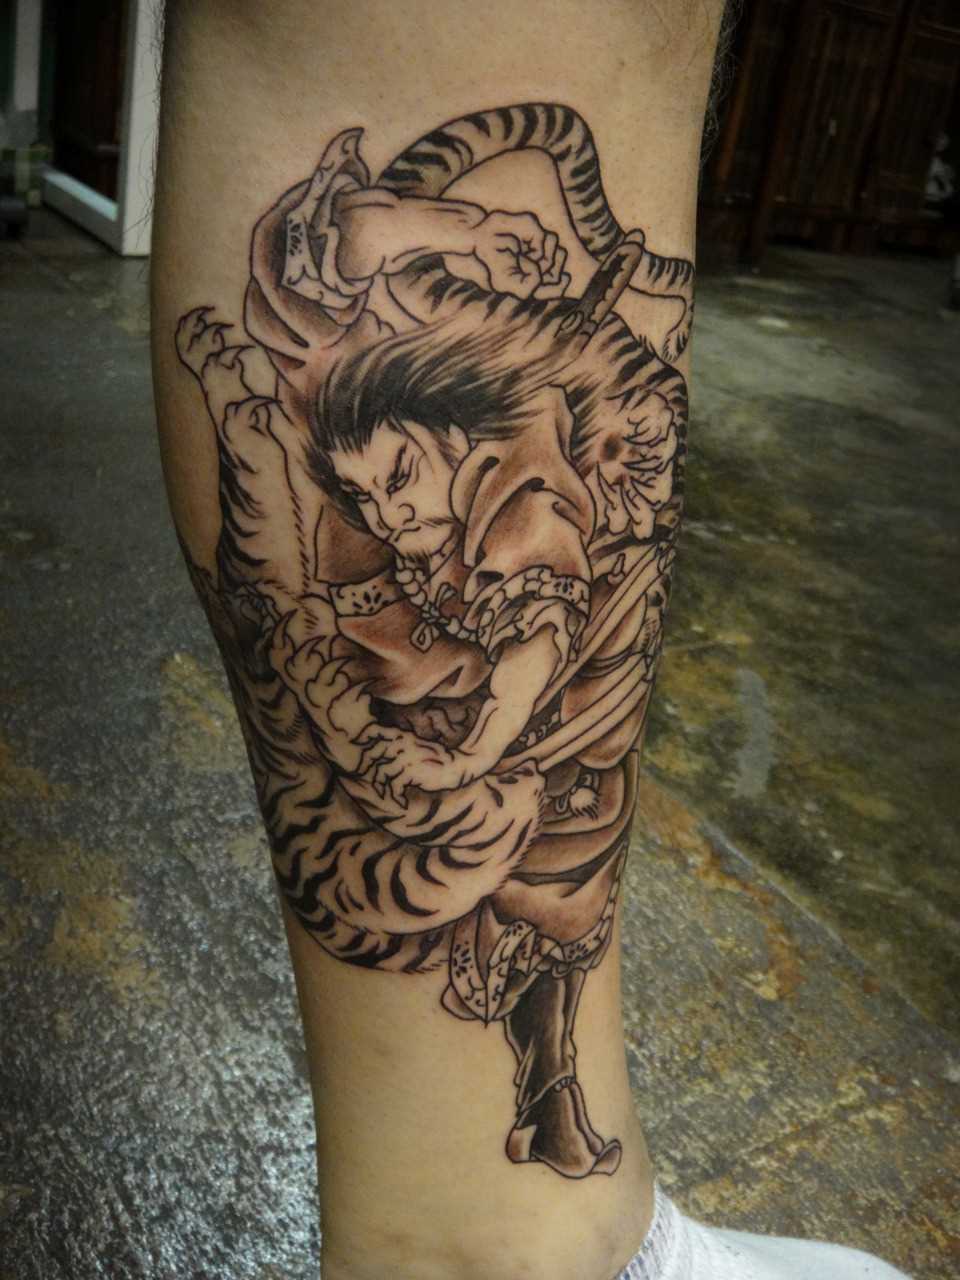 Tatuagem na perna do cara - de samurai e tigre